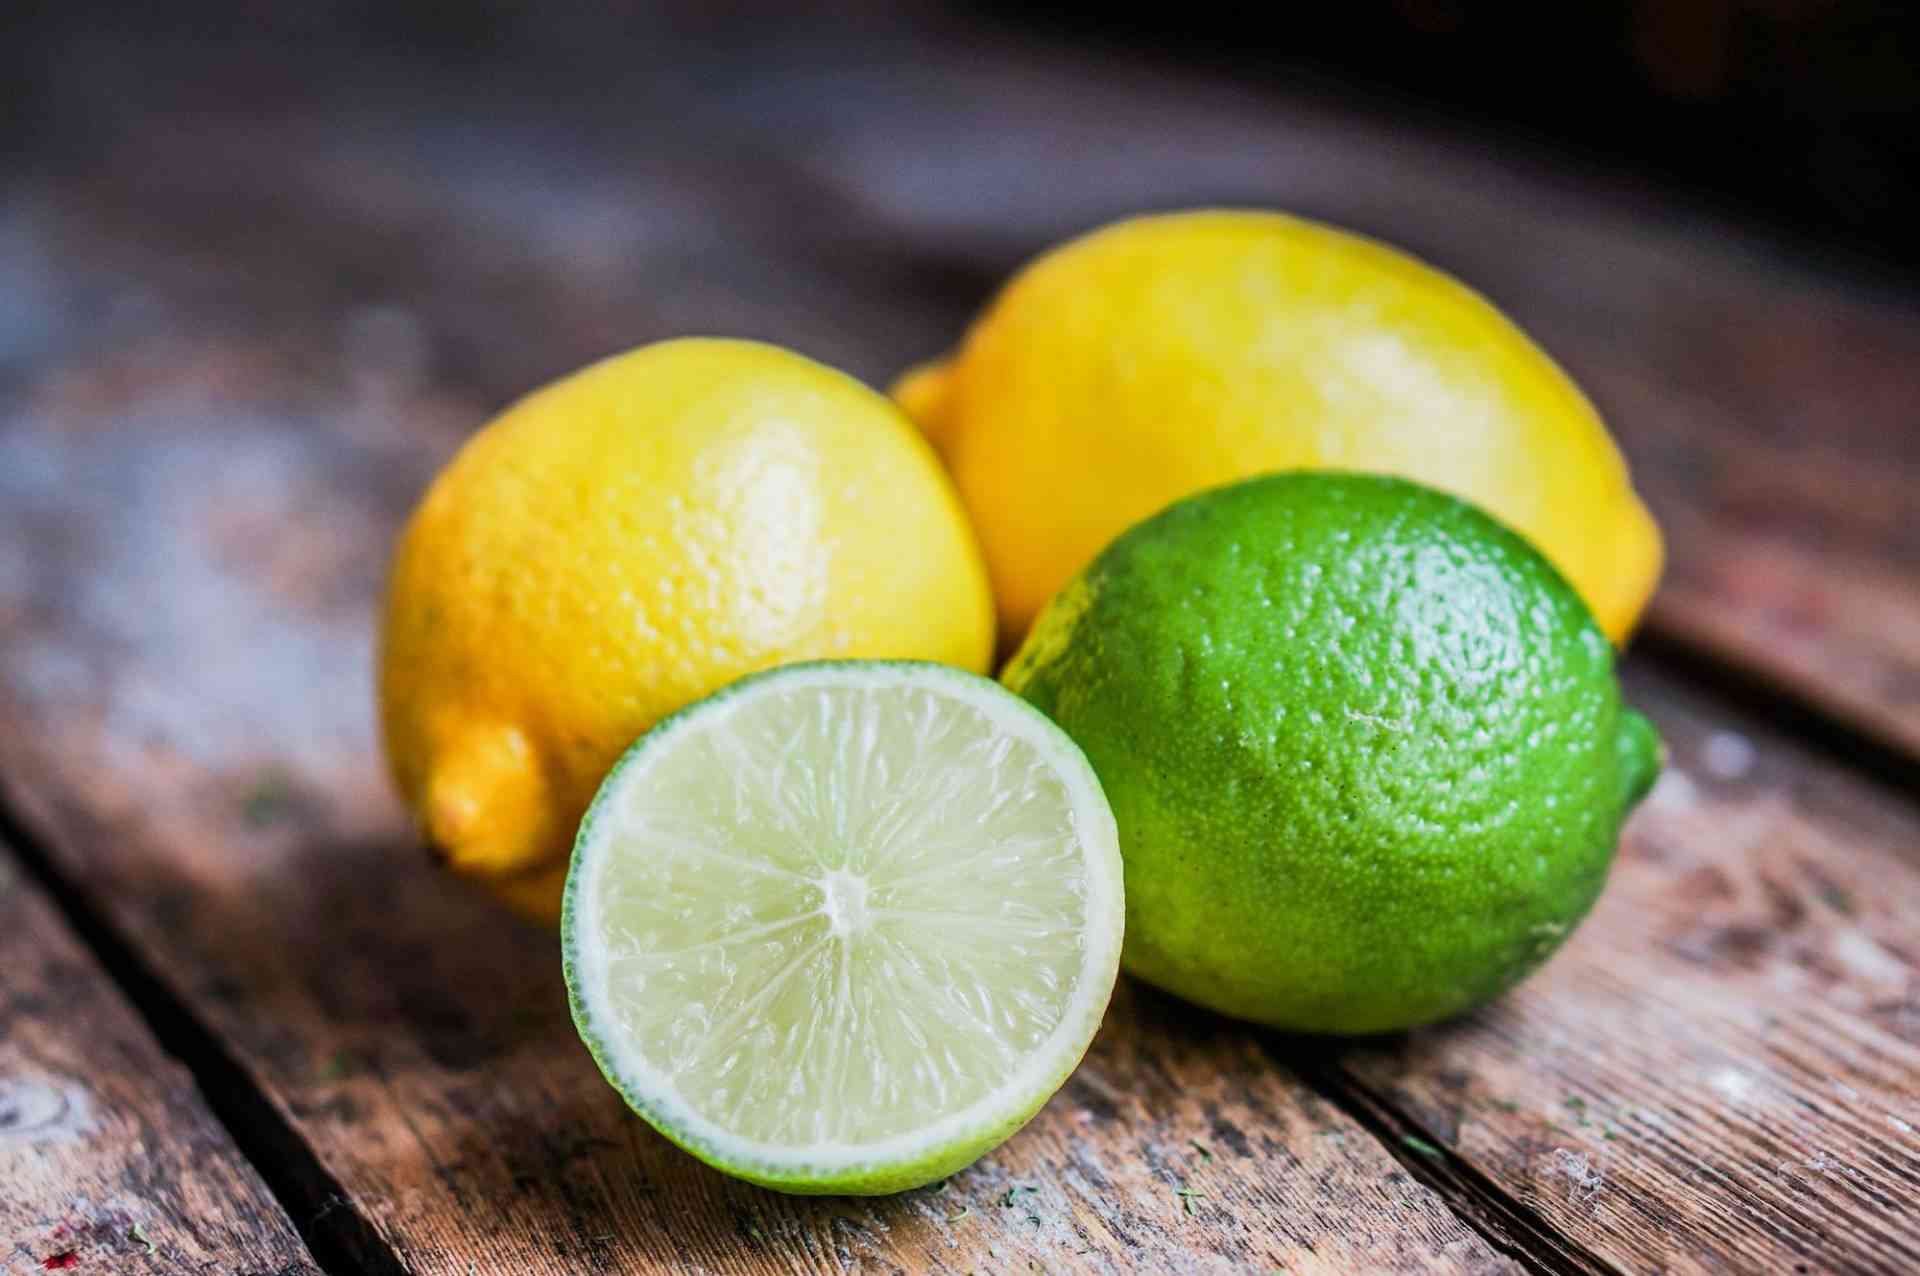 سعر كيلو الليمون يصل إلى 60 قرشاً في السوق المركزي